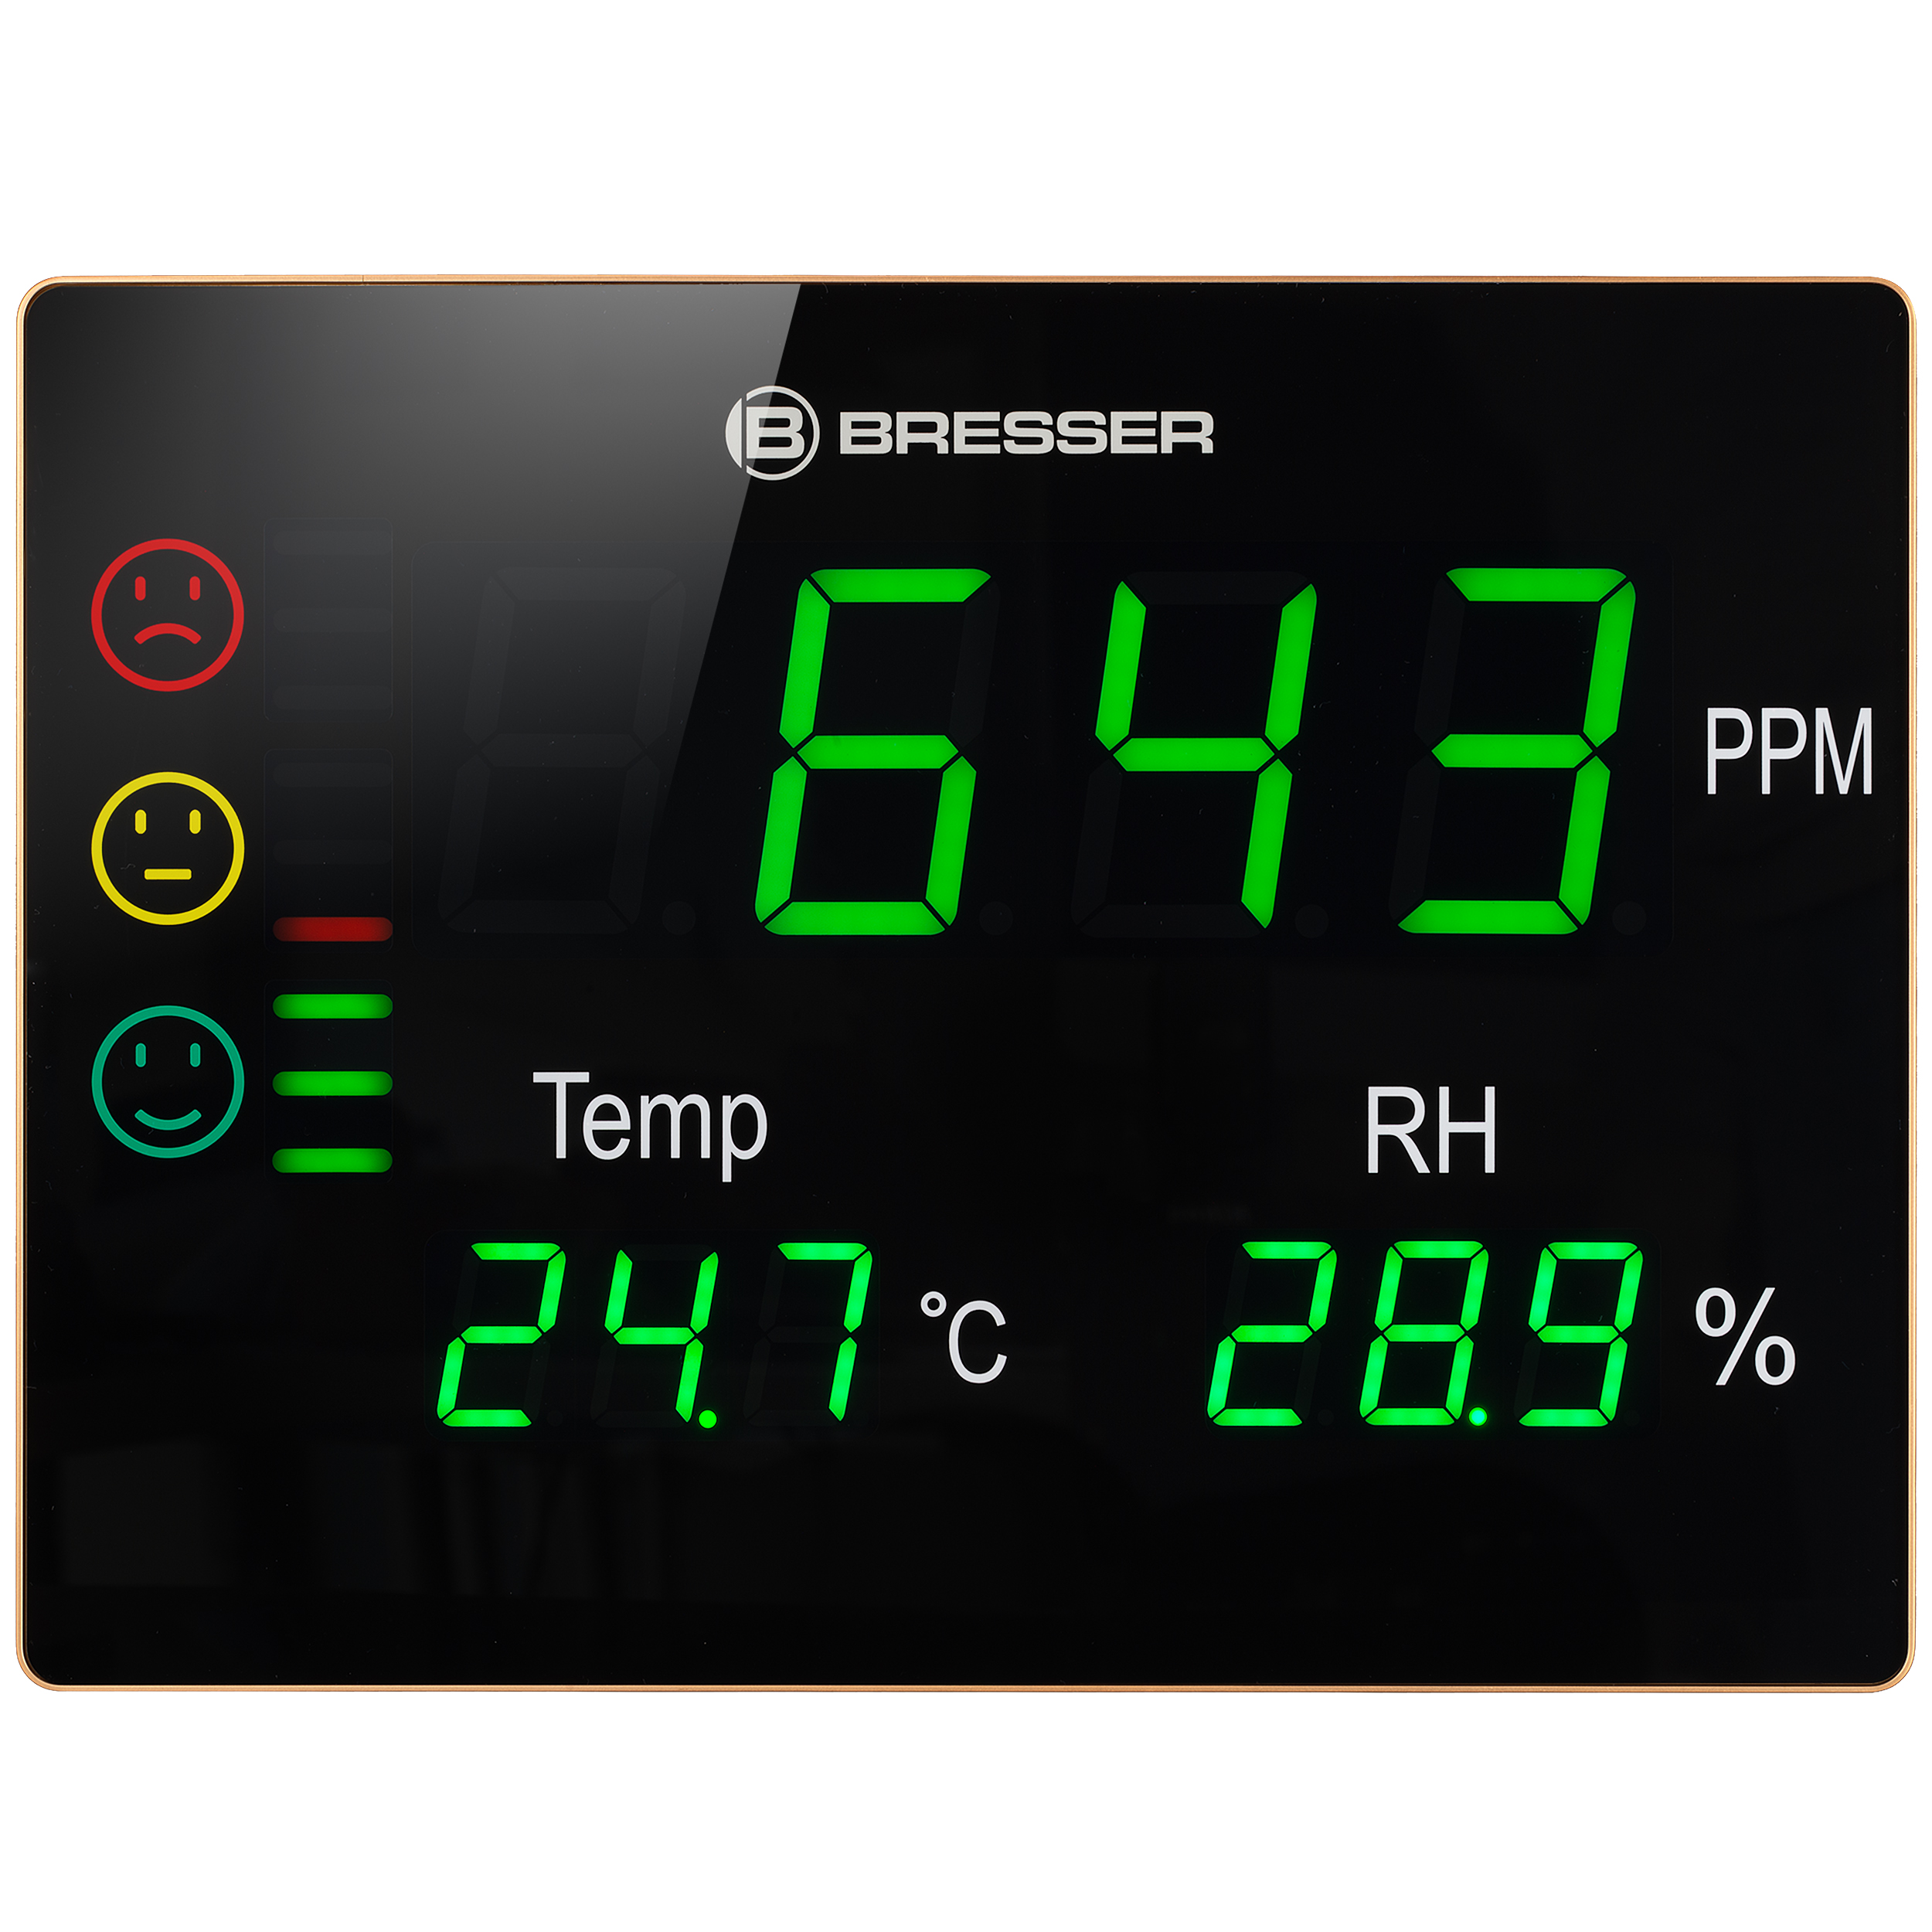 Misuratore di CO2 Smile XXL BRESSER con semaforo CO2 e display LED extra-large